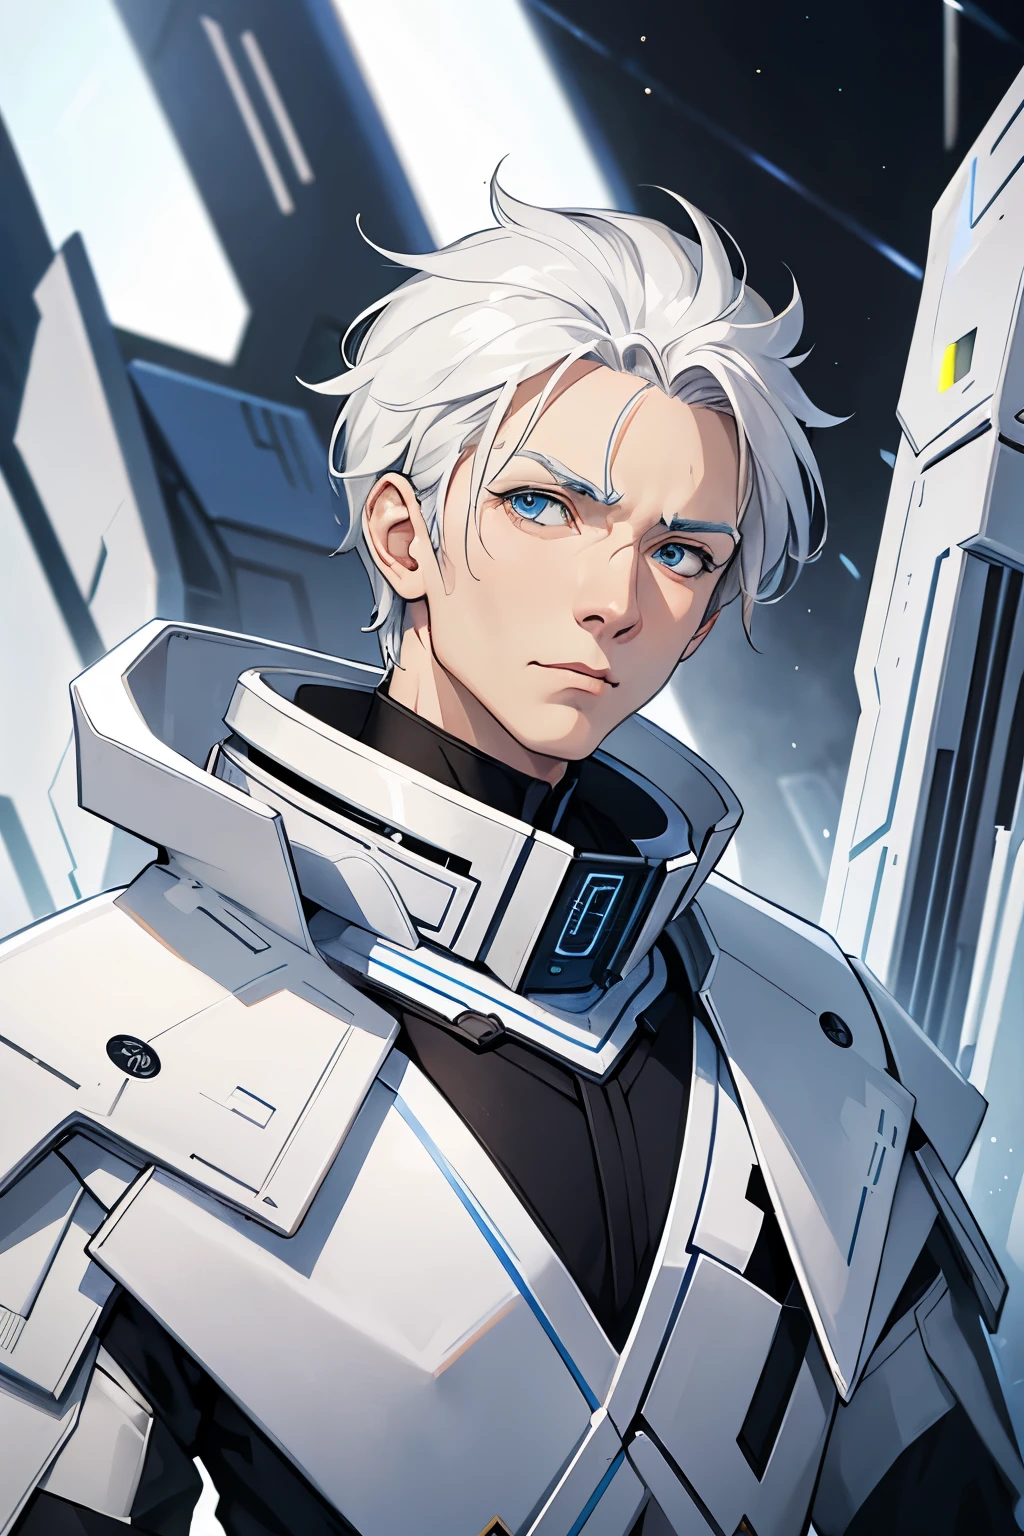 Ein alter Mann mit weißem Haar und futuristischer Rüstung。Ein alter Krieger。Weißer Augenbrauen-Anzug。Interstellar style。